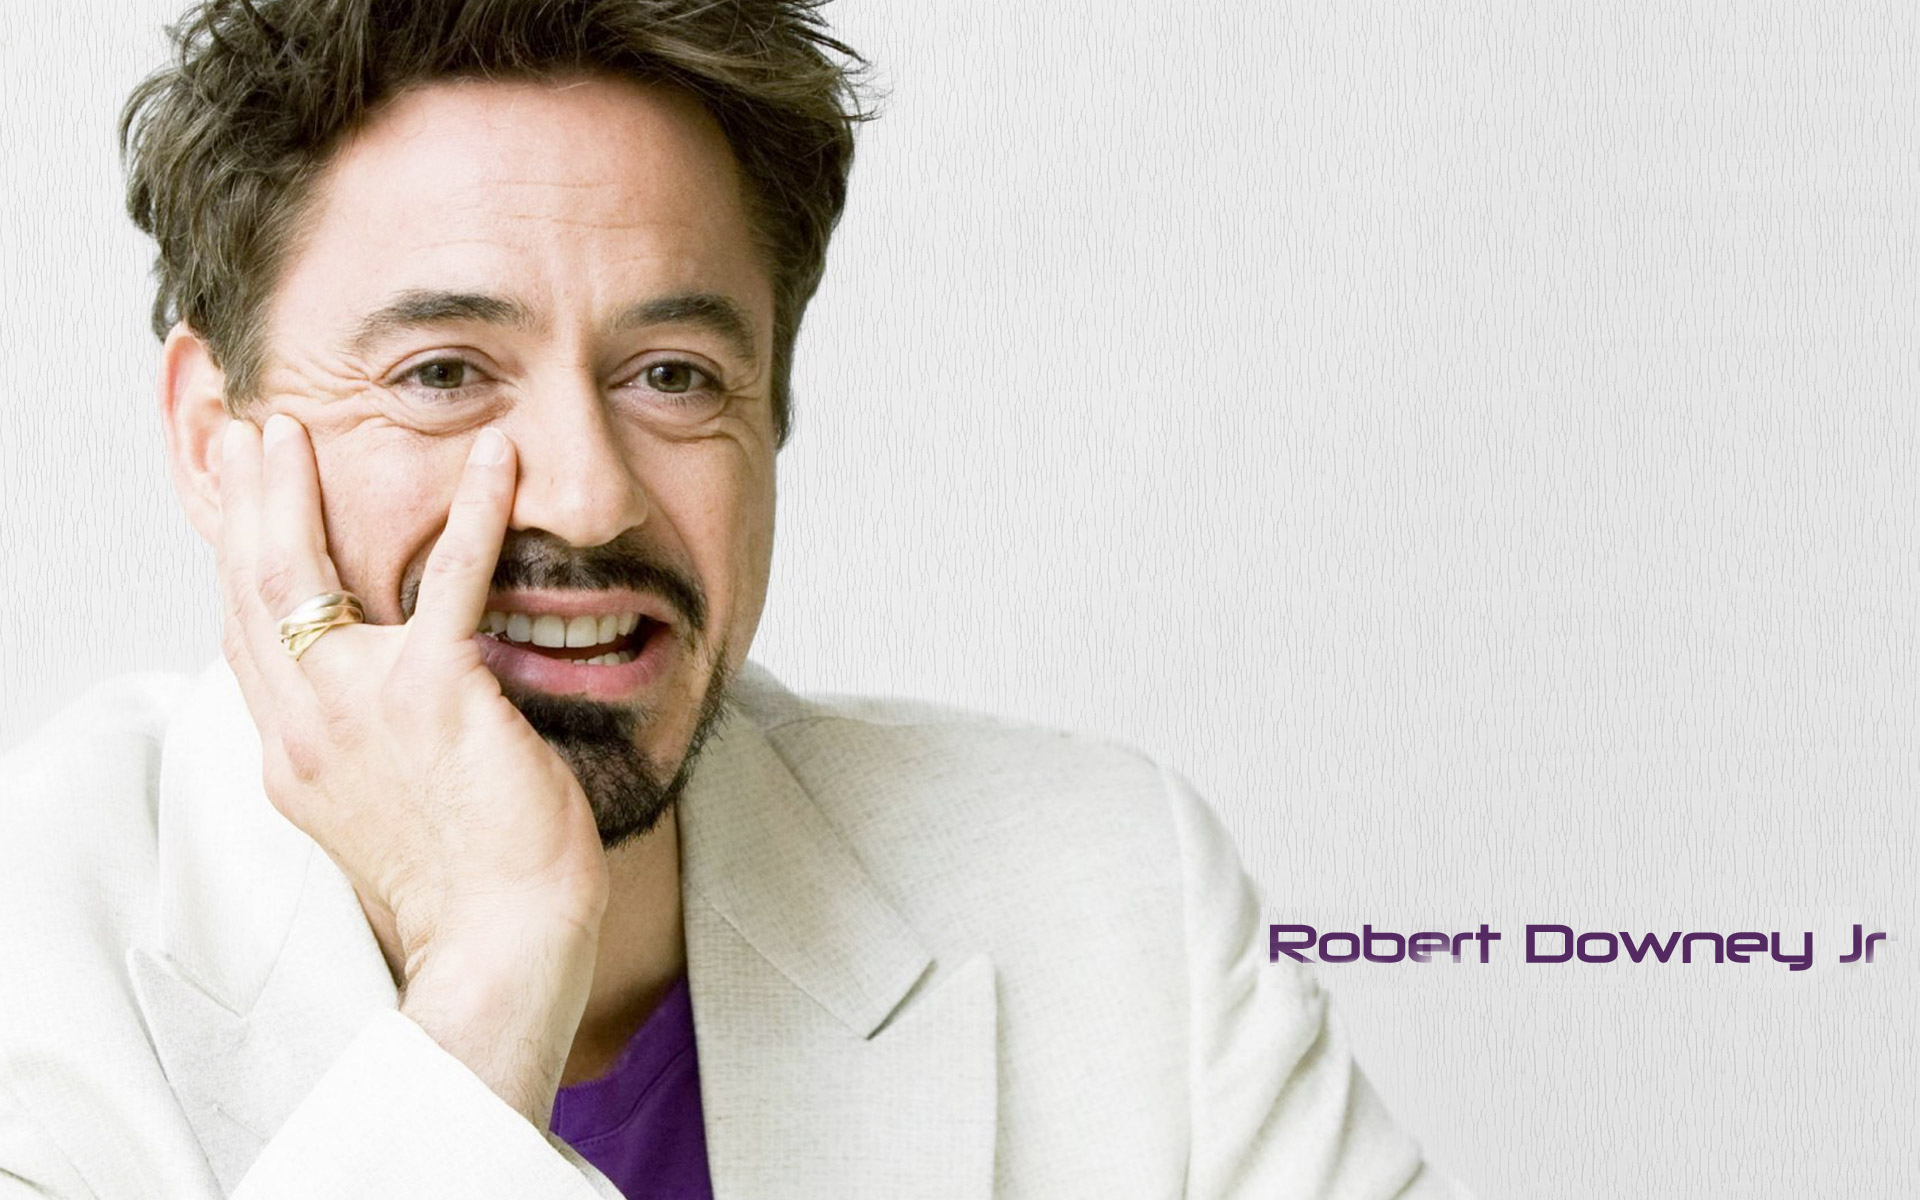 Robert Downey Jr Wallpaper - Windows 10 Wallpapers